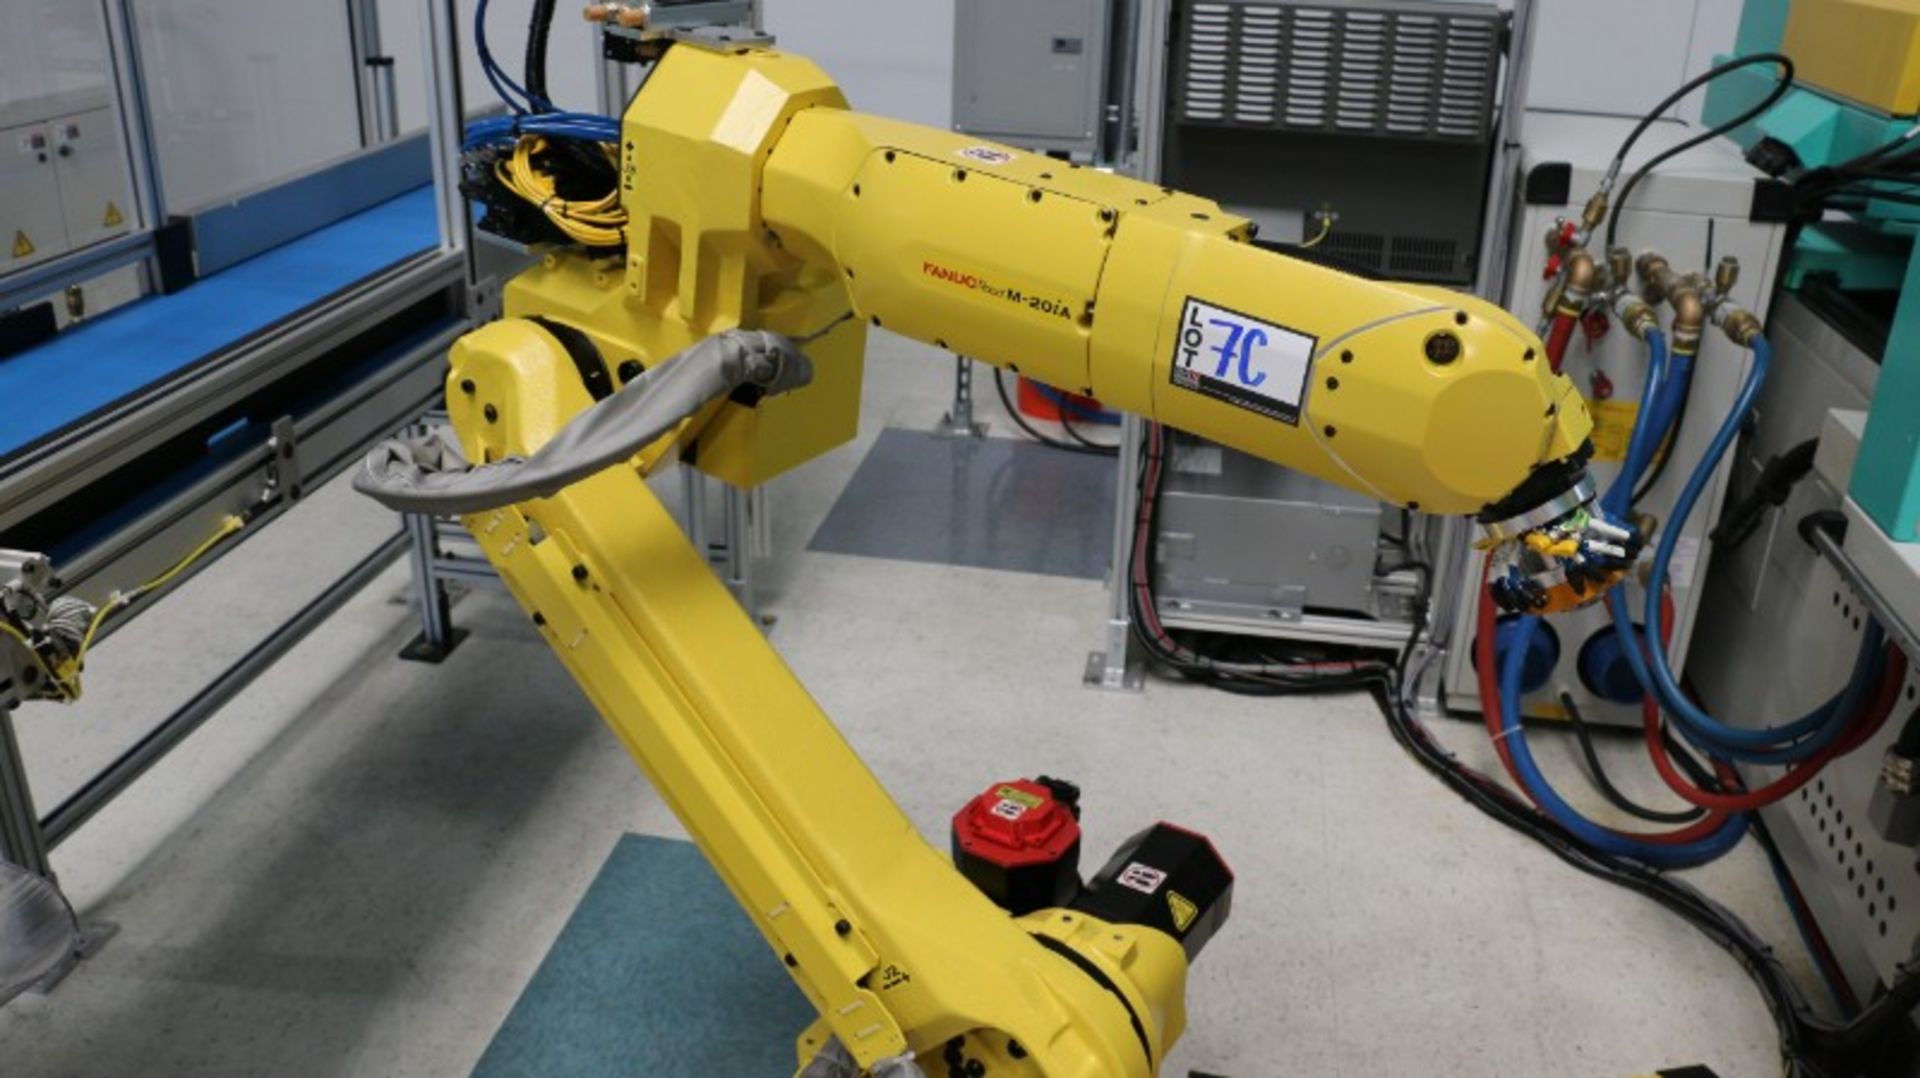 Fanuc Model M-20iA CNC Robot - Image 5 of 16